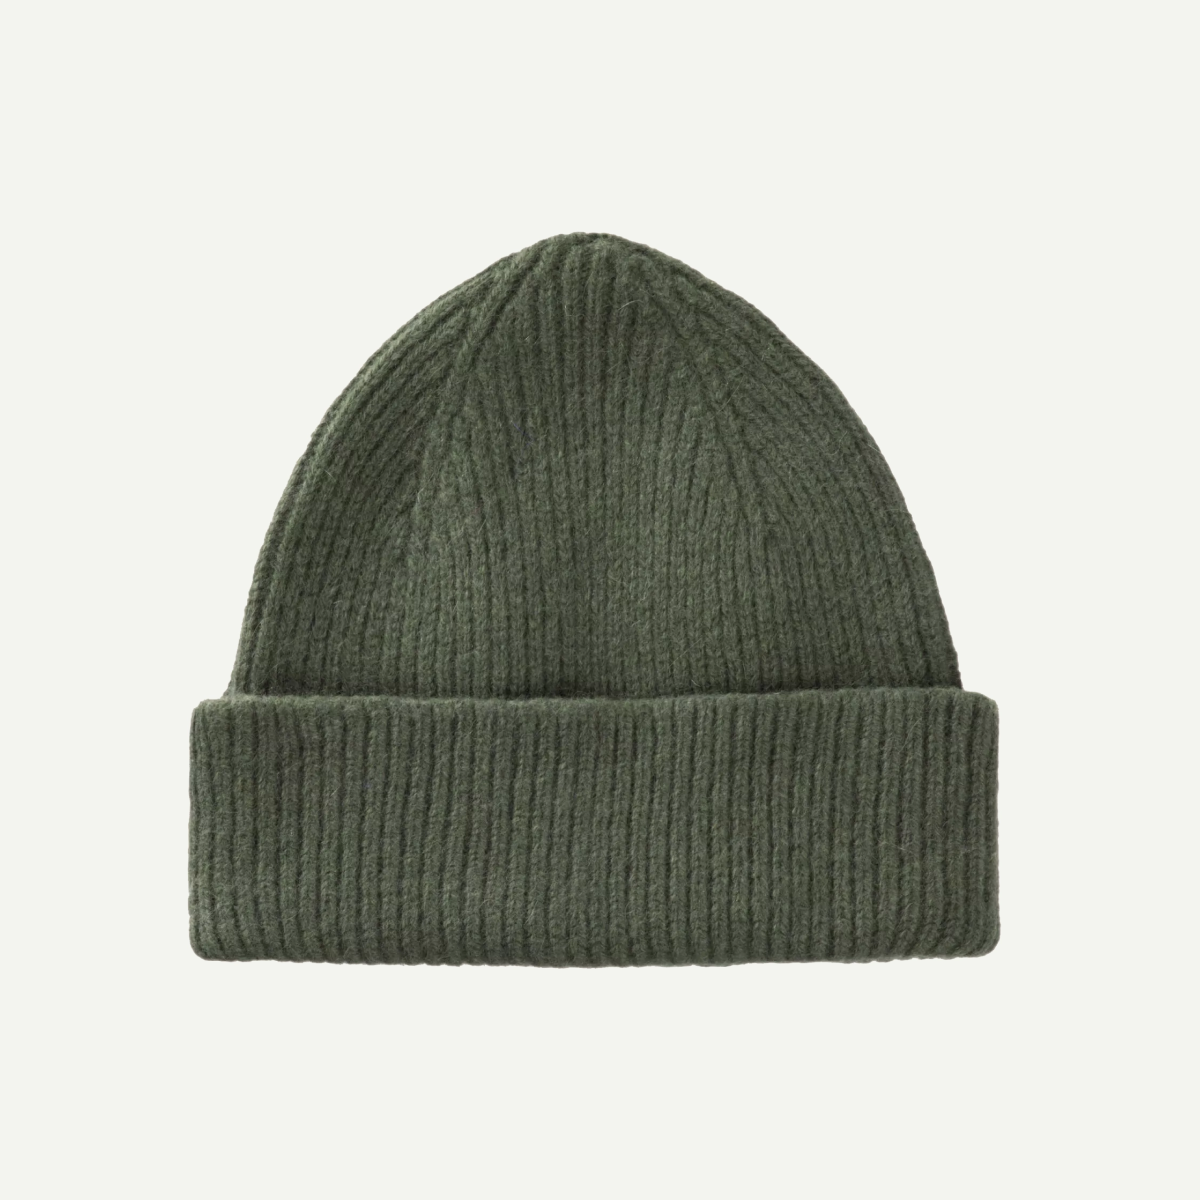 Le Bonnet Croco Green Beanie Hat